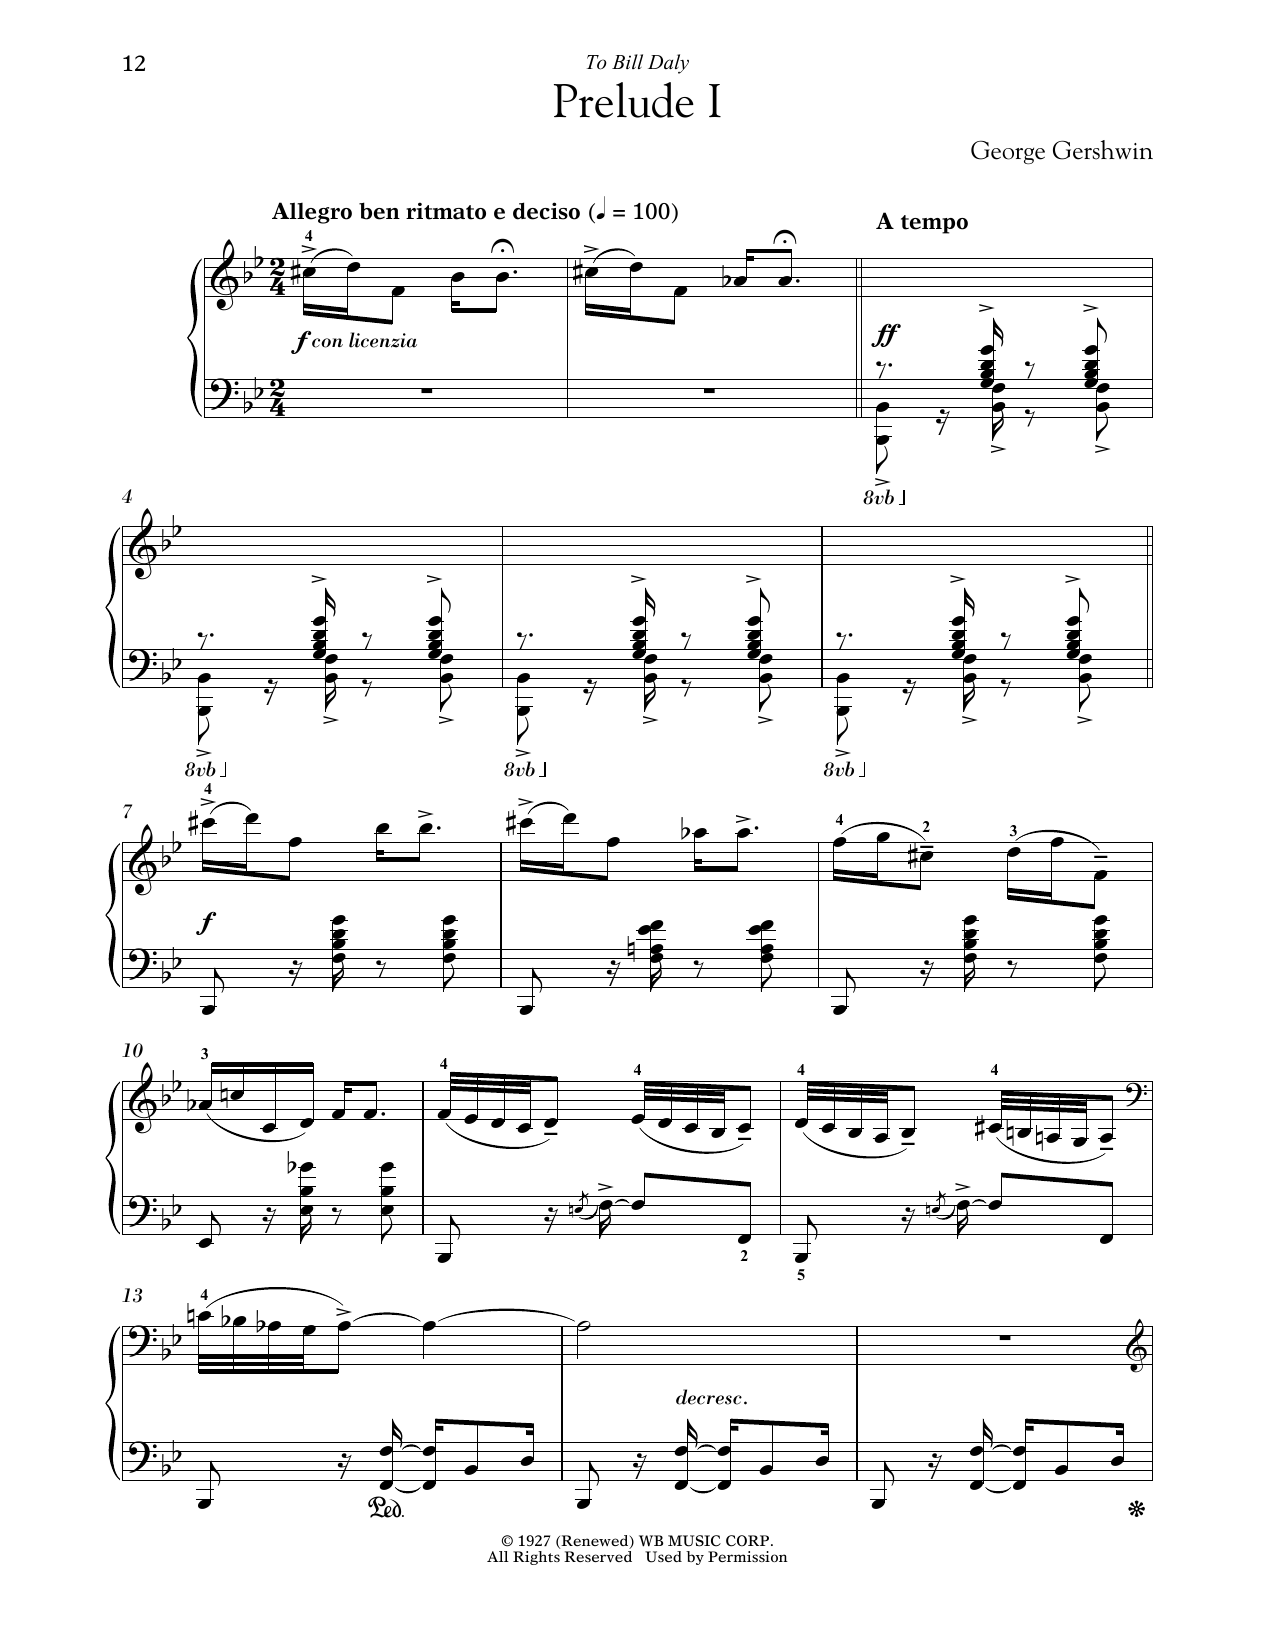 Download George Gershwin Prelude I (Allegro Ben Ritmato E Deciso Sheet Music